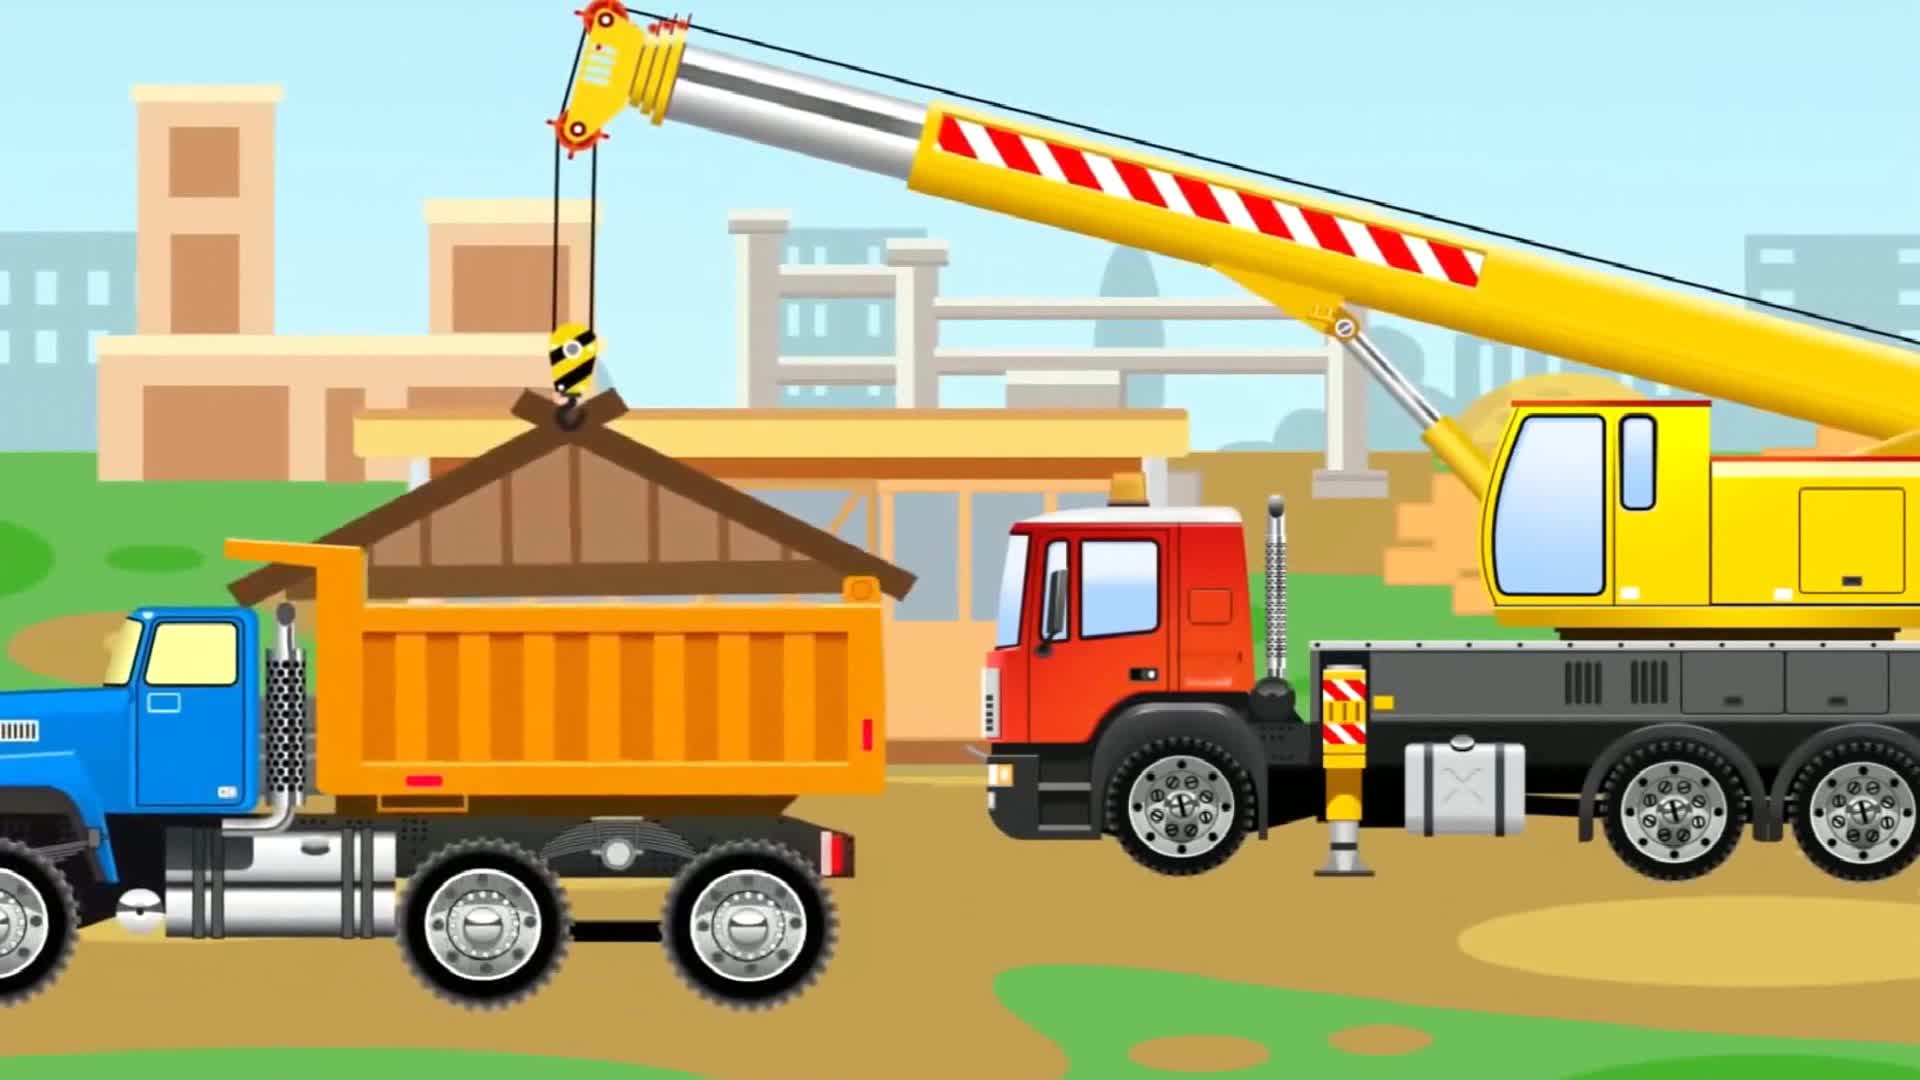 工程车挖掘机益智动画 吊车起重机修建木屋   